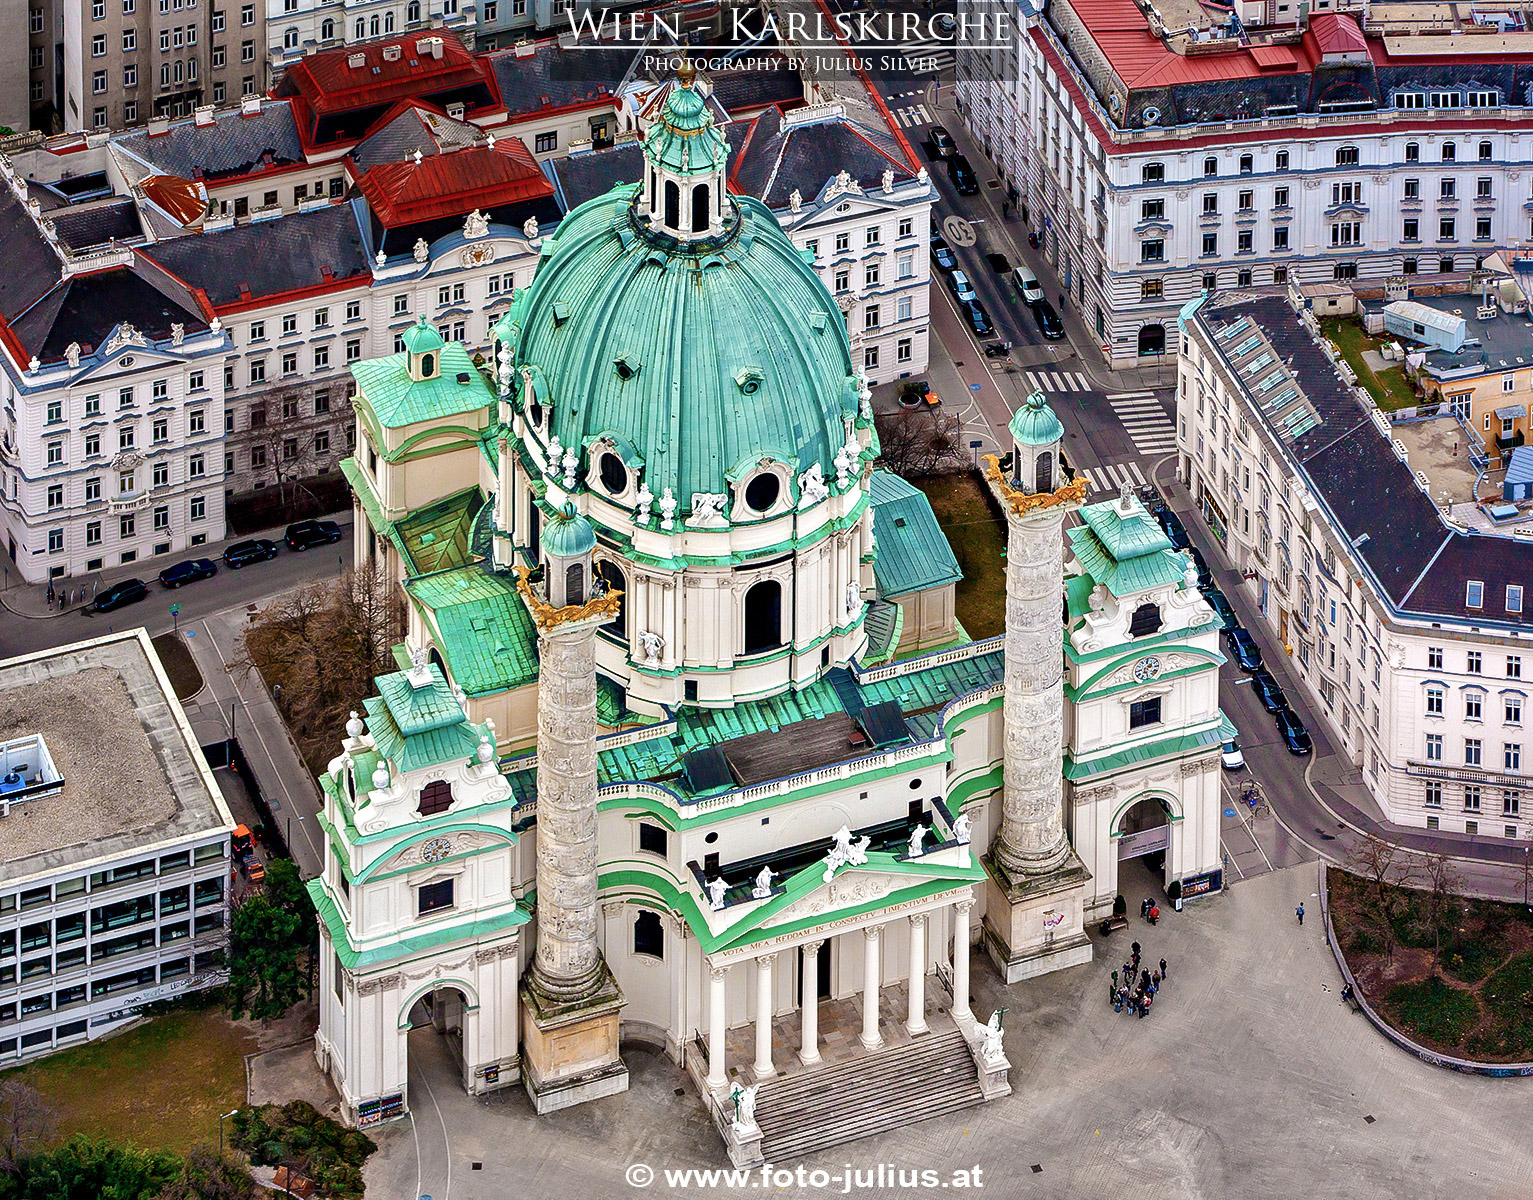 W6382a_Karlskirche_Wien.jpg, 1023kB